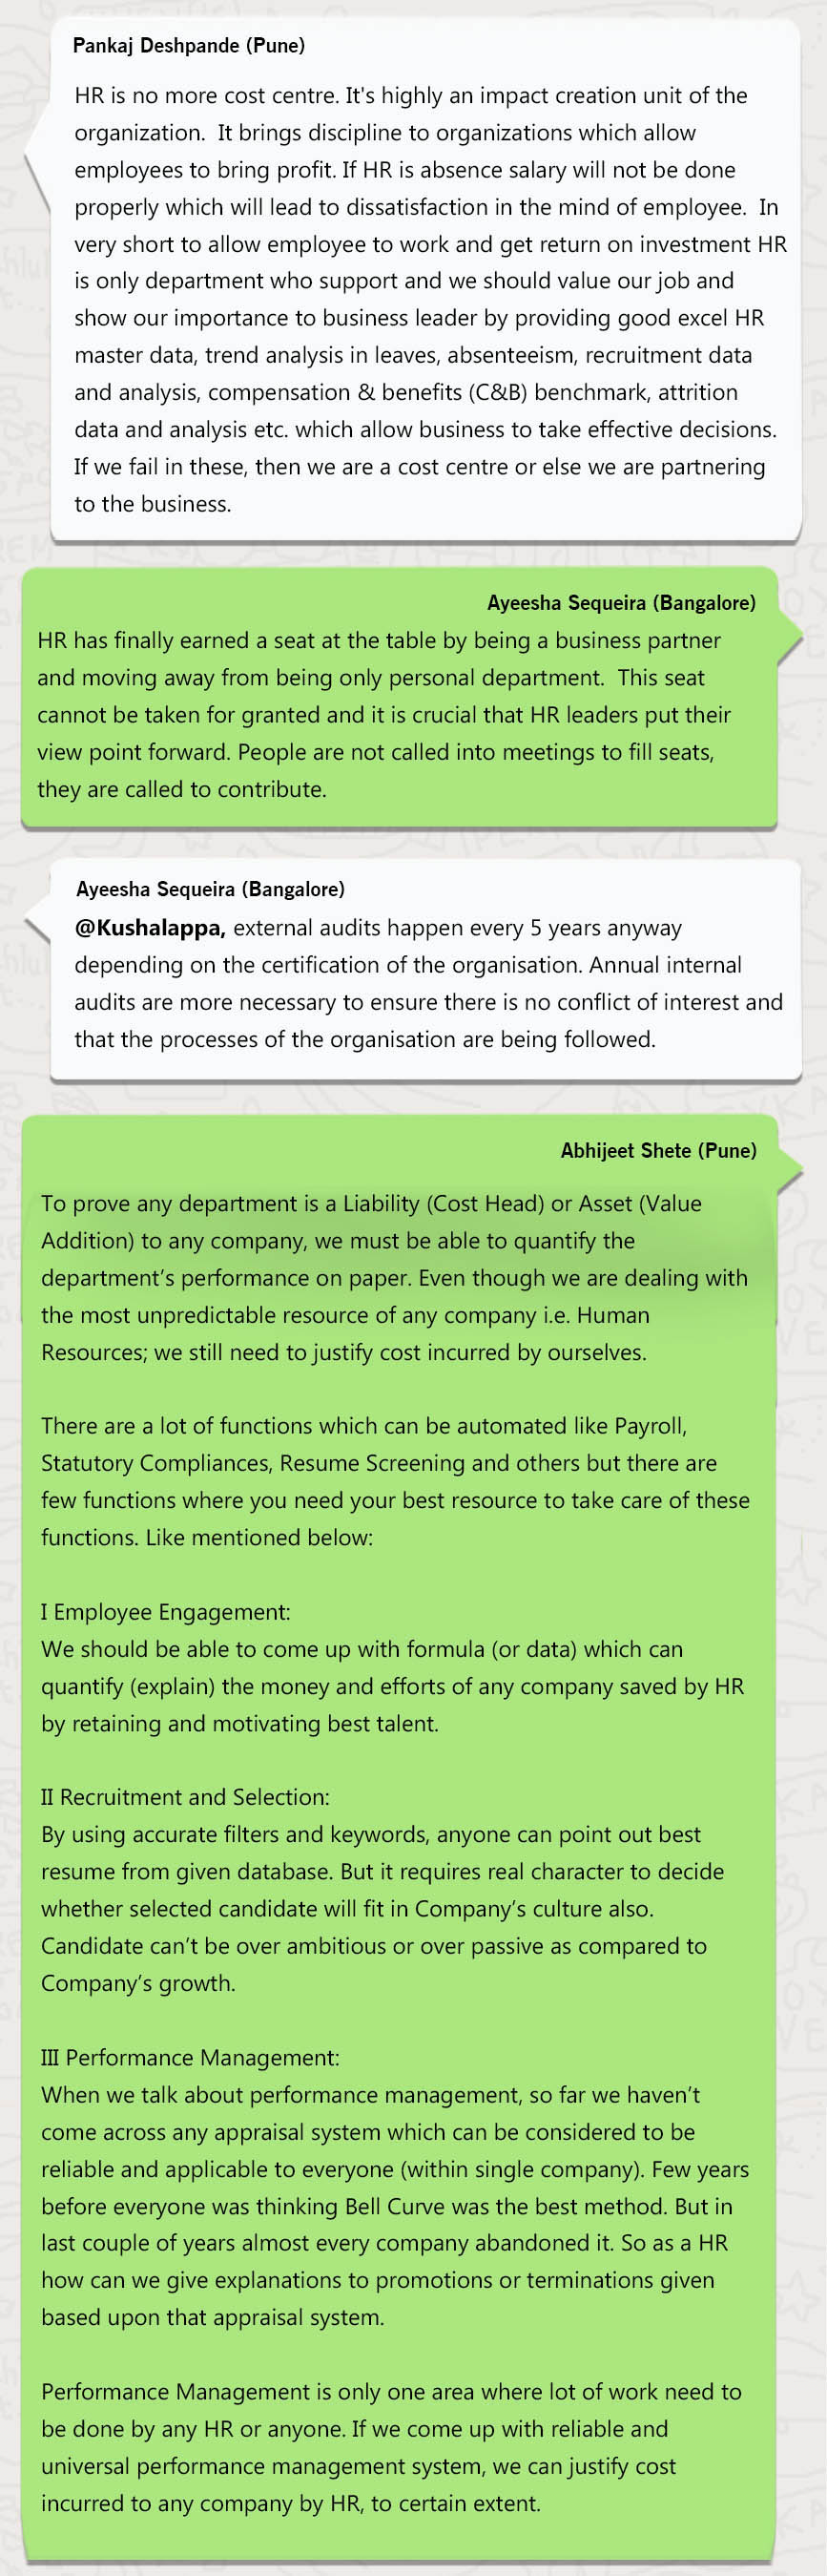 WhatsApp Group Chat ÃƒÂ¢Ã¢â€šÂ¬Ã¢â‚¬Å“Human Resources Management Challenges: Non ÃƒÂ¢Ã¢â€šÂ¬Ã¢â‚¬Å“ Revenue Generating Department 